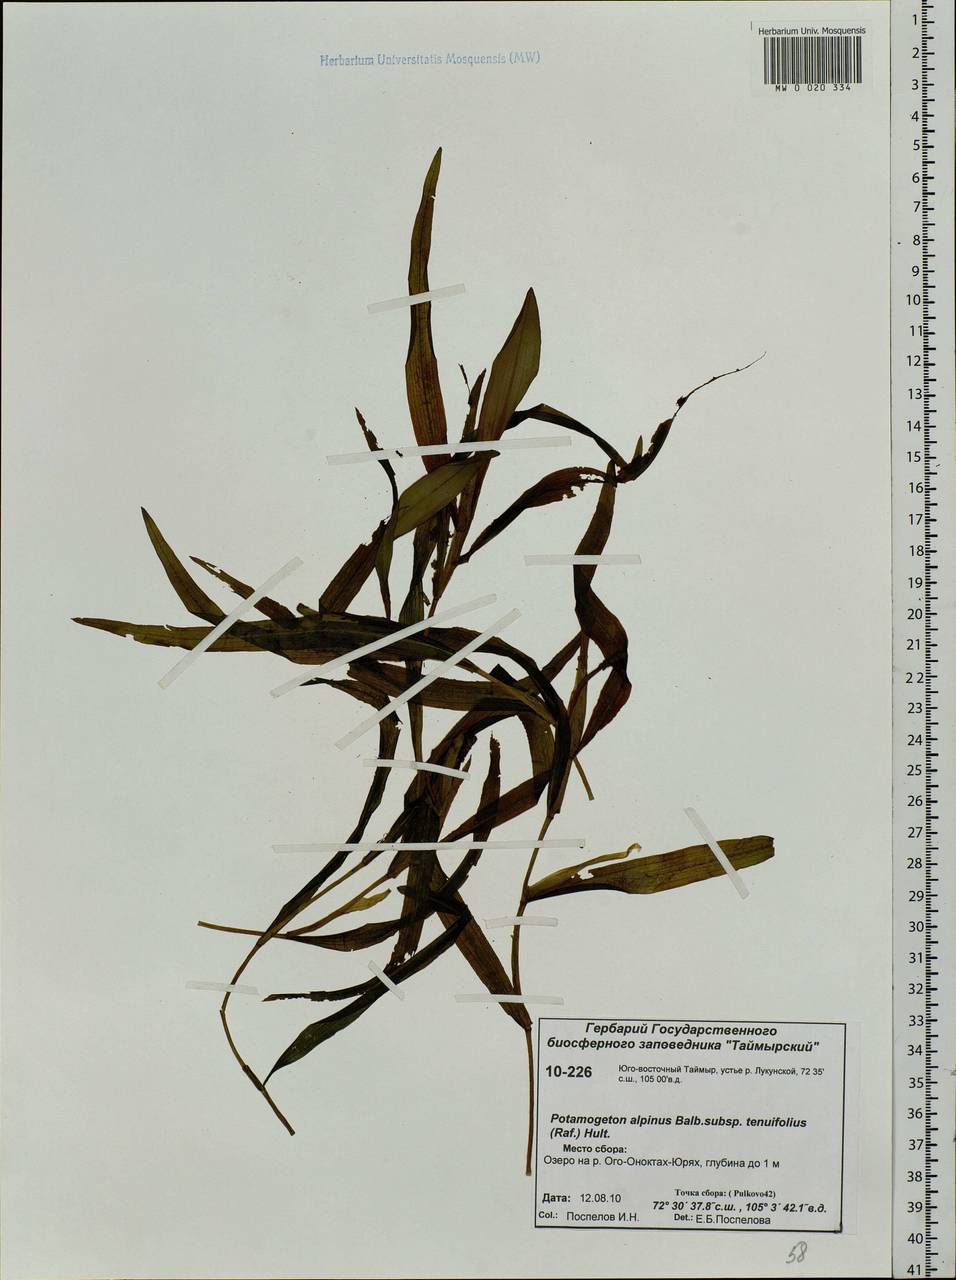 Potamogeton alpinus subsp. tenuifolius (Raf.) Hultén, Siberia, Central Siberia (S3) (Russia)